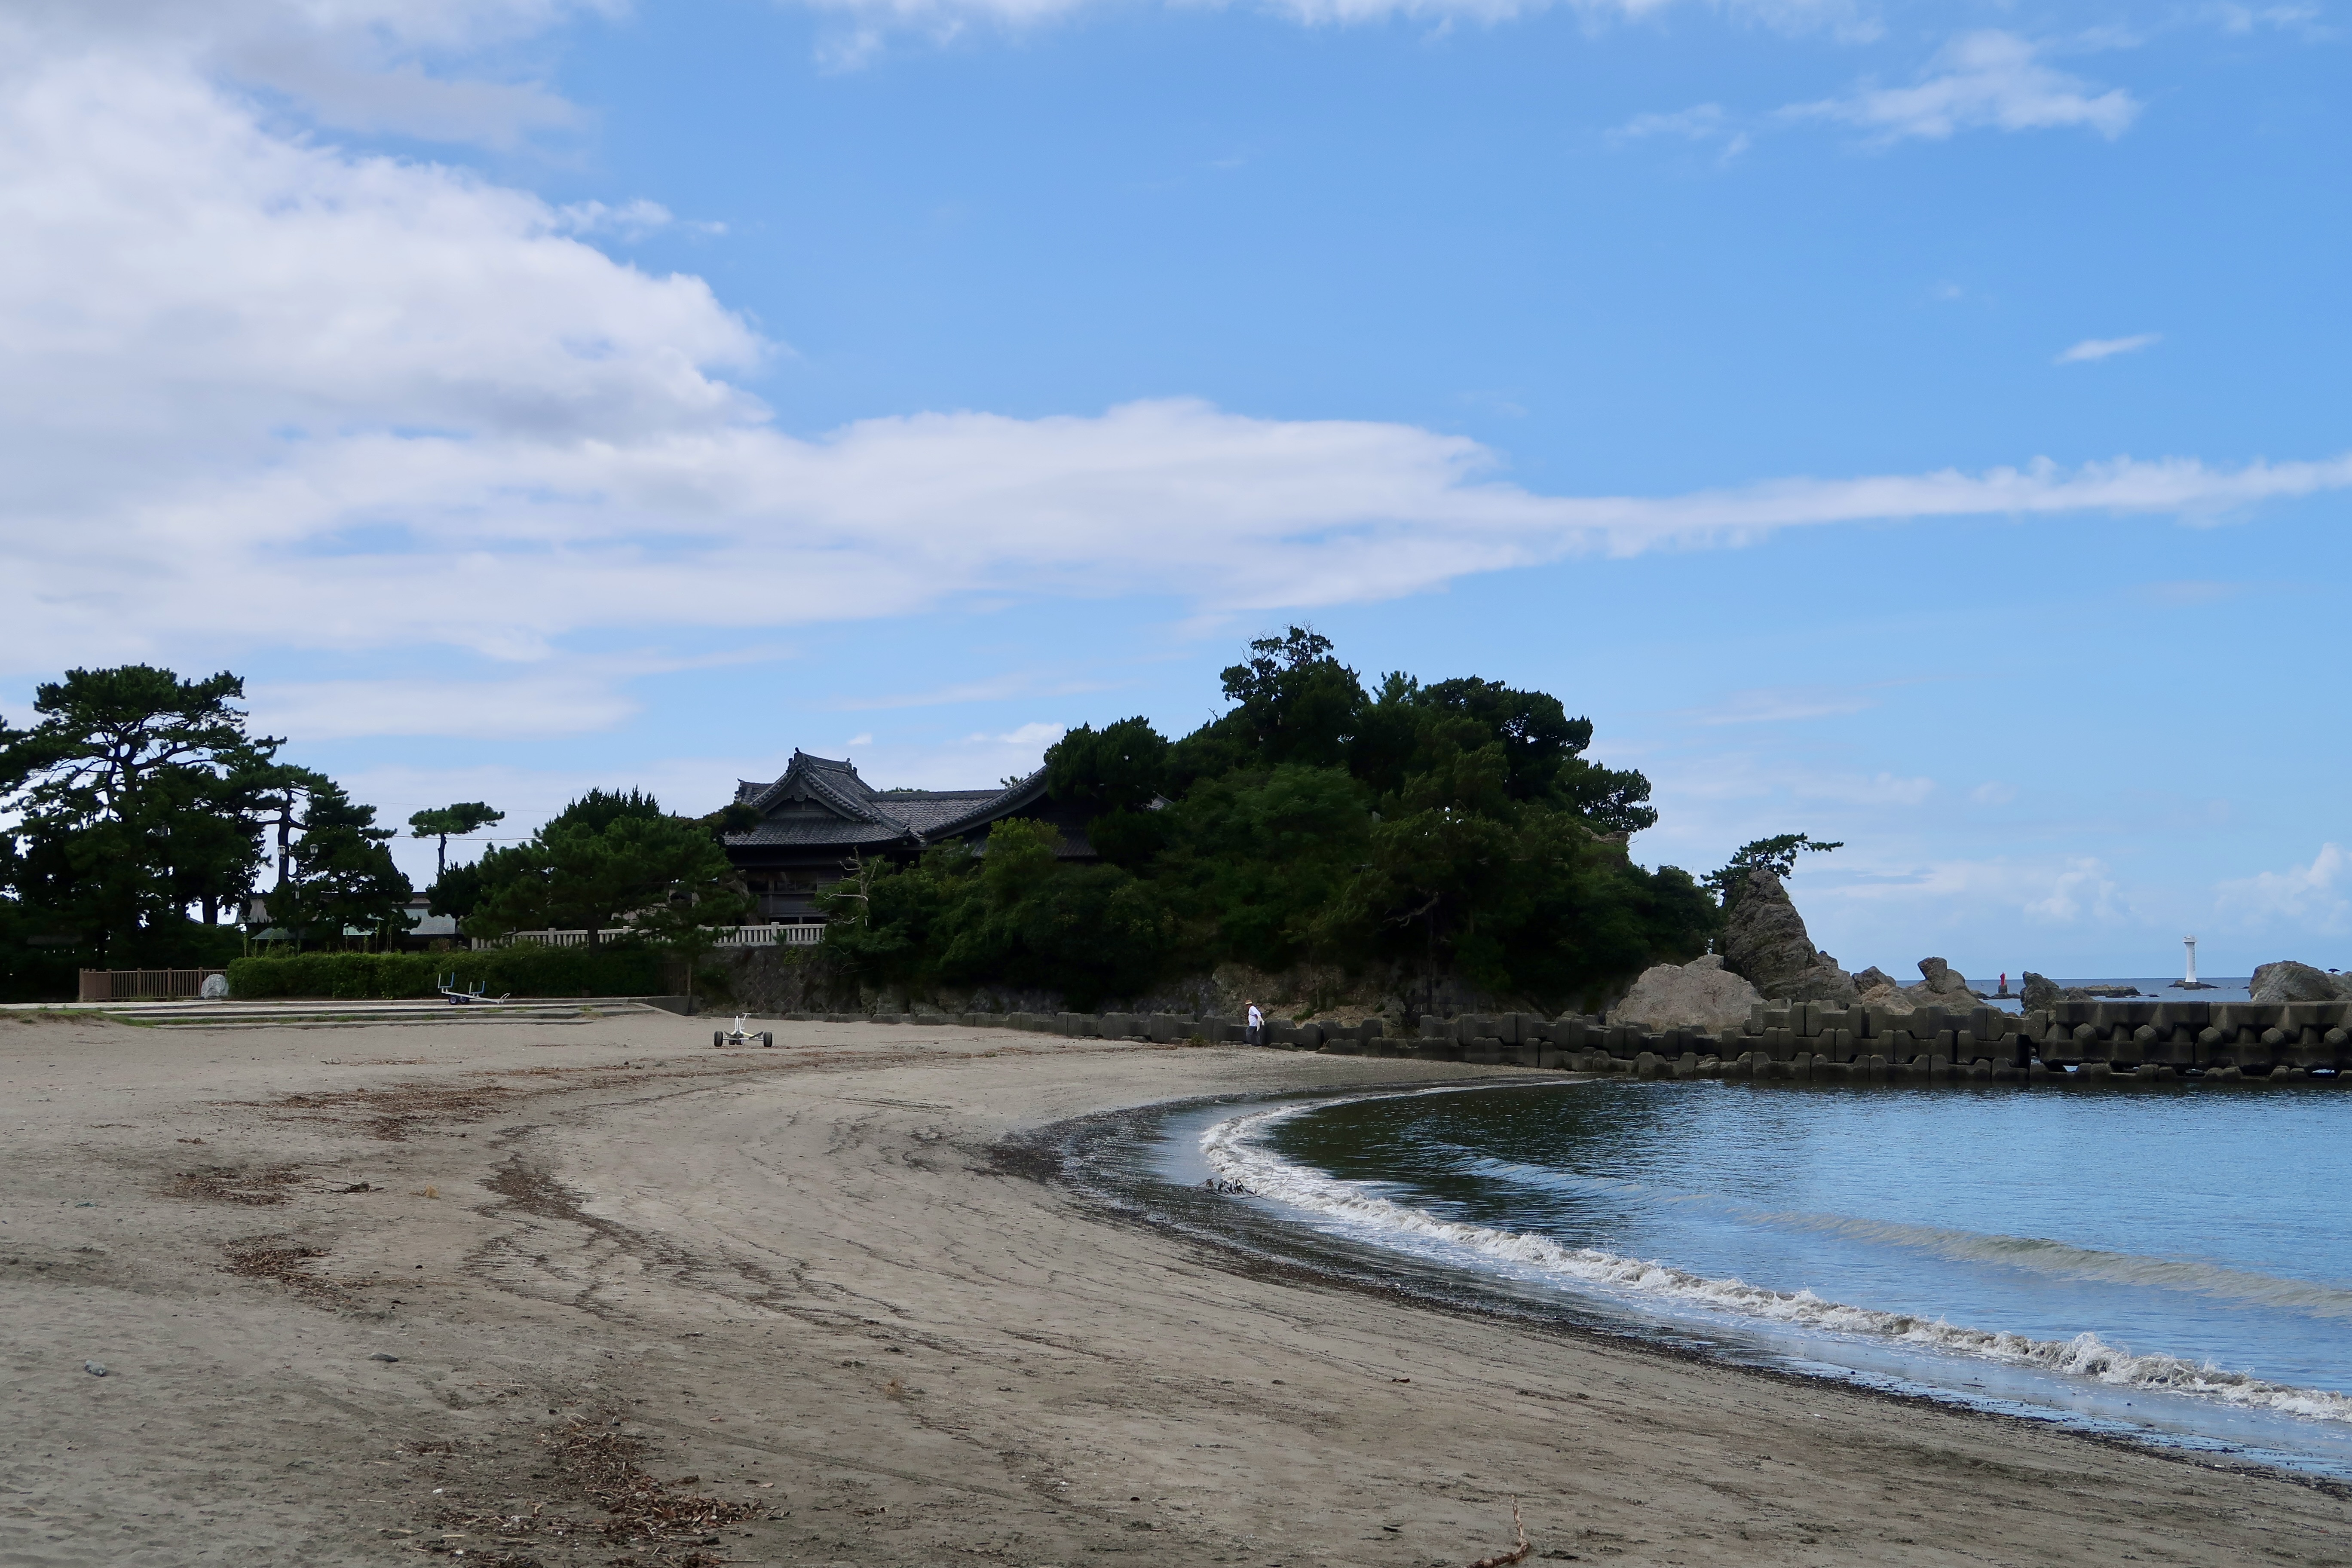 Morito beach with Morito Shrine in the distance